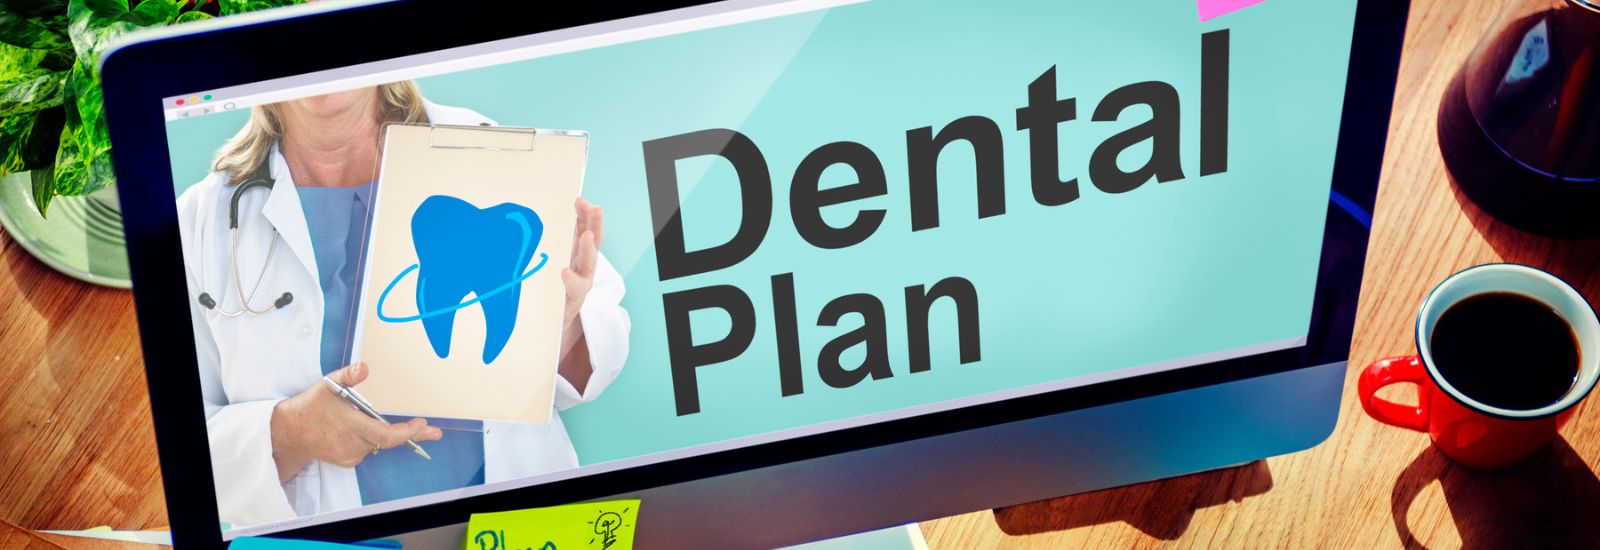 Dental plan